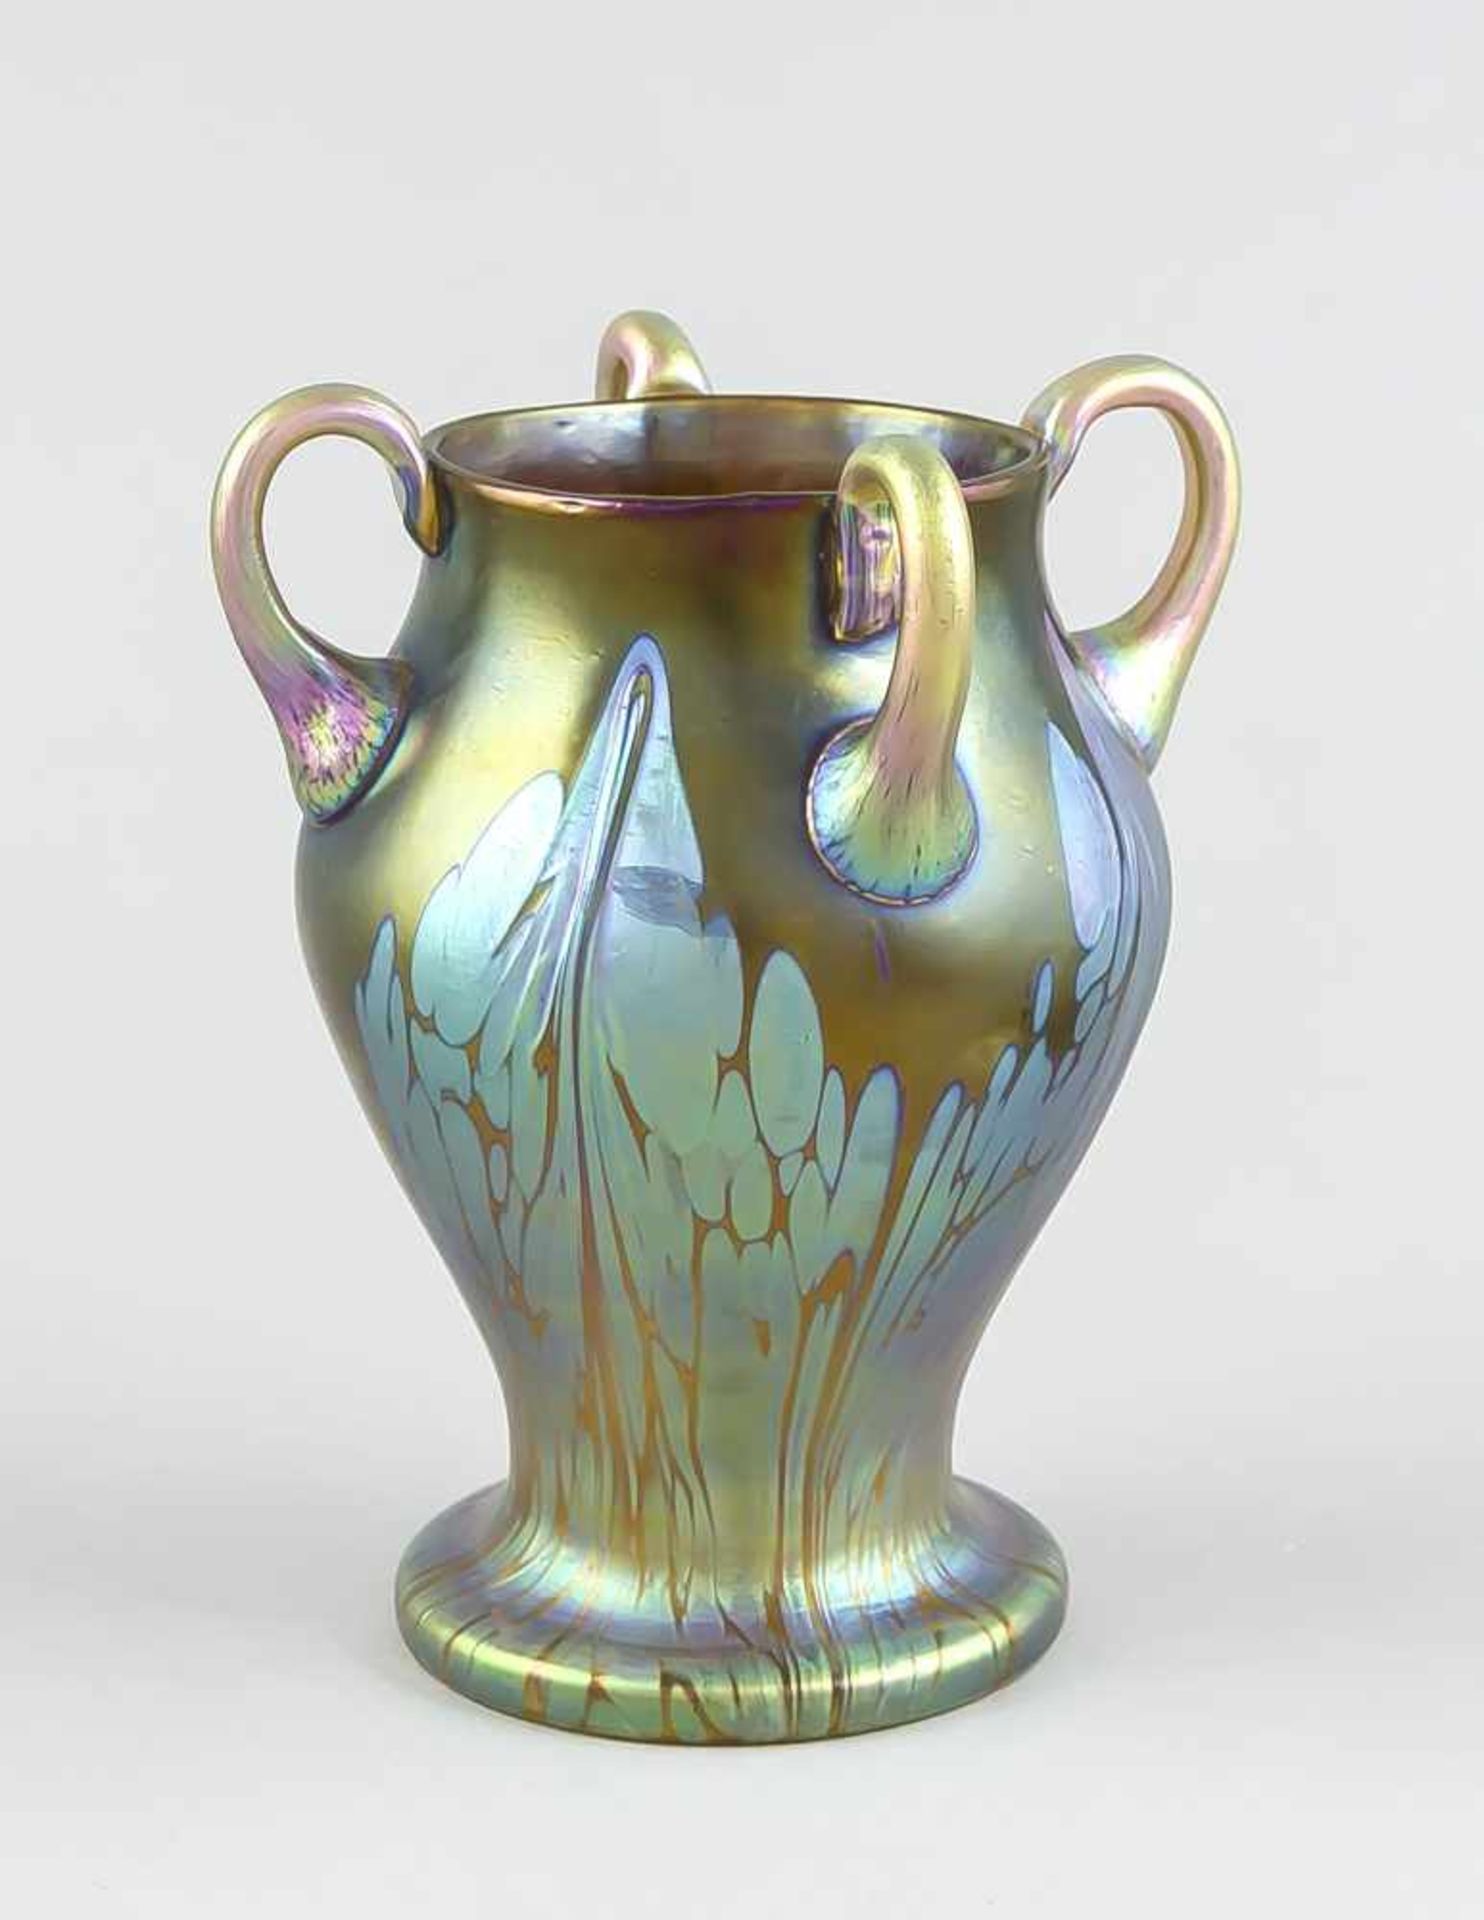 Art Nouveau vase, around 1900, Johann Loetz Witwe, Klostermühle, round stand, body withwidening